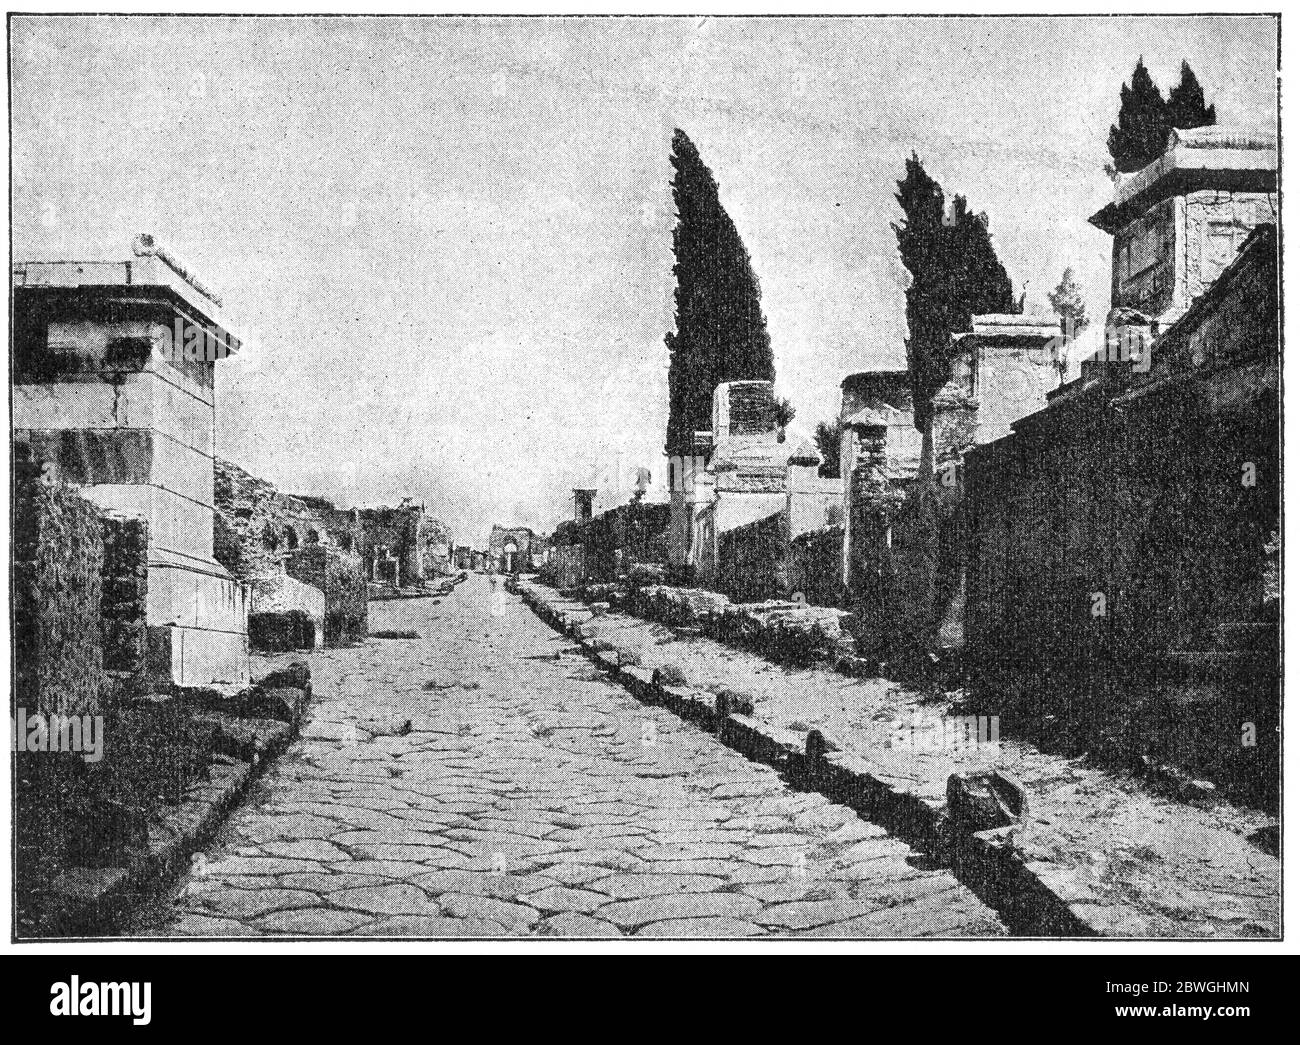 Le strade di Pompei. La città fu distrutta e sepolta sotto cenere vulcanica e pomice nell'eruzione del Vesuvio nel 79 d.C. Foto Stock